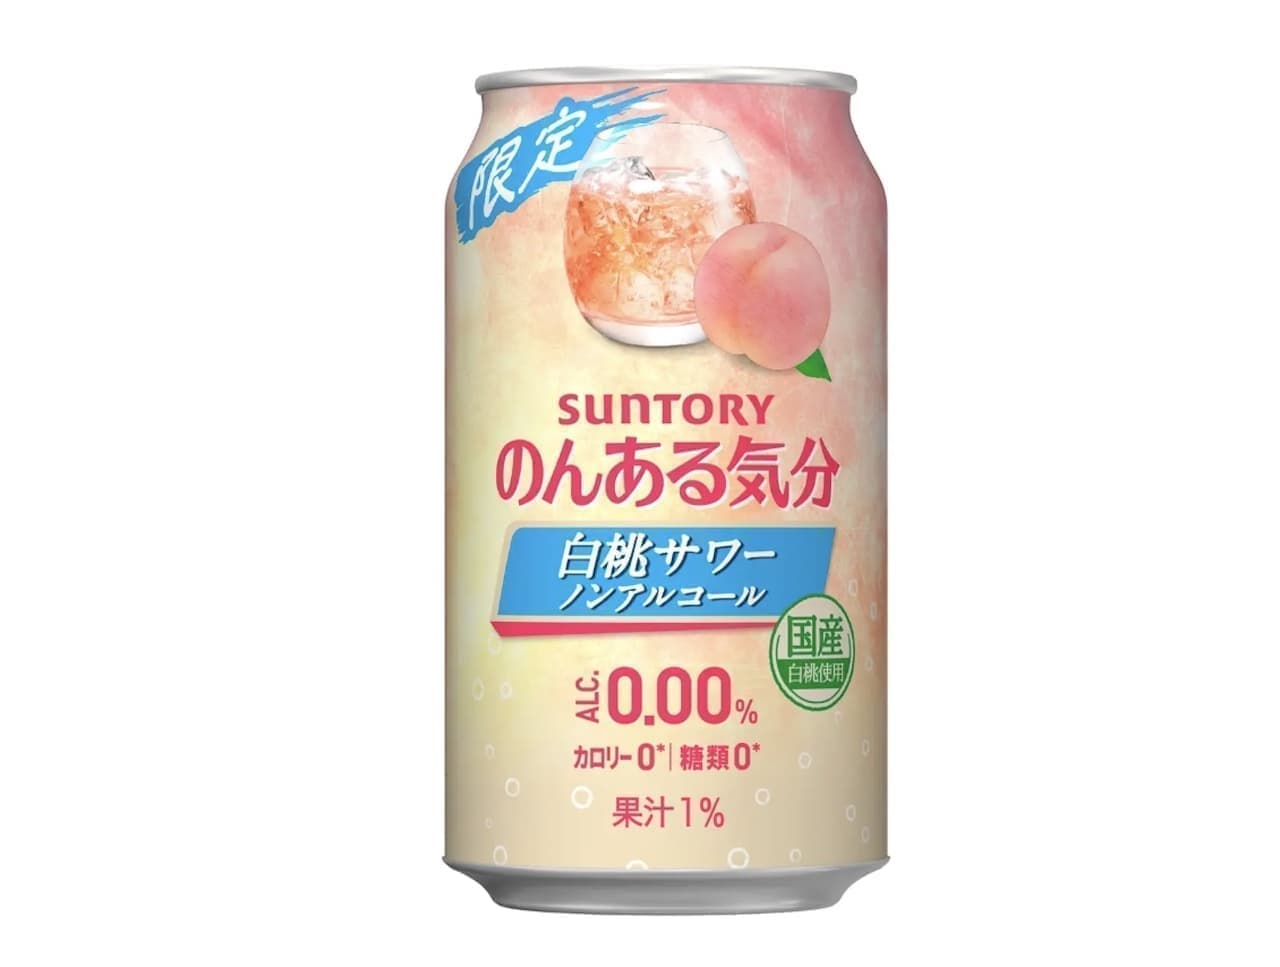 Suntory "Non-alcoholic White Peach Sour" (Non-alcoholic)